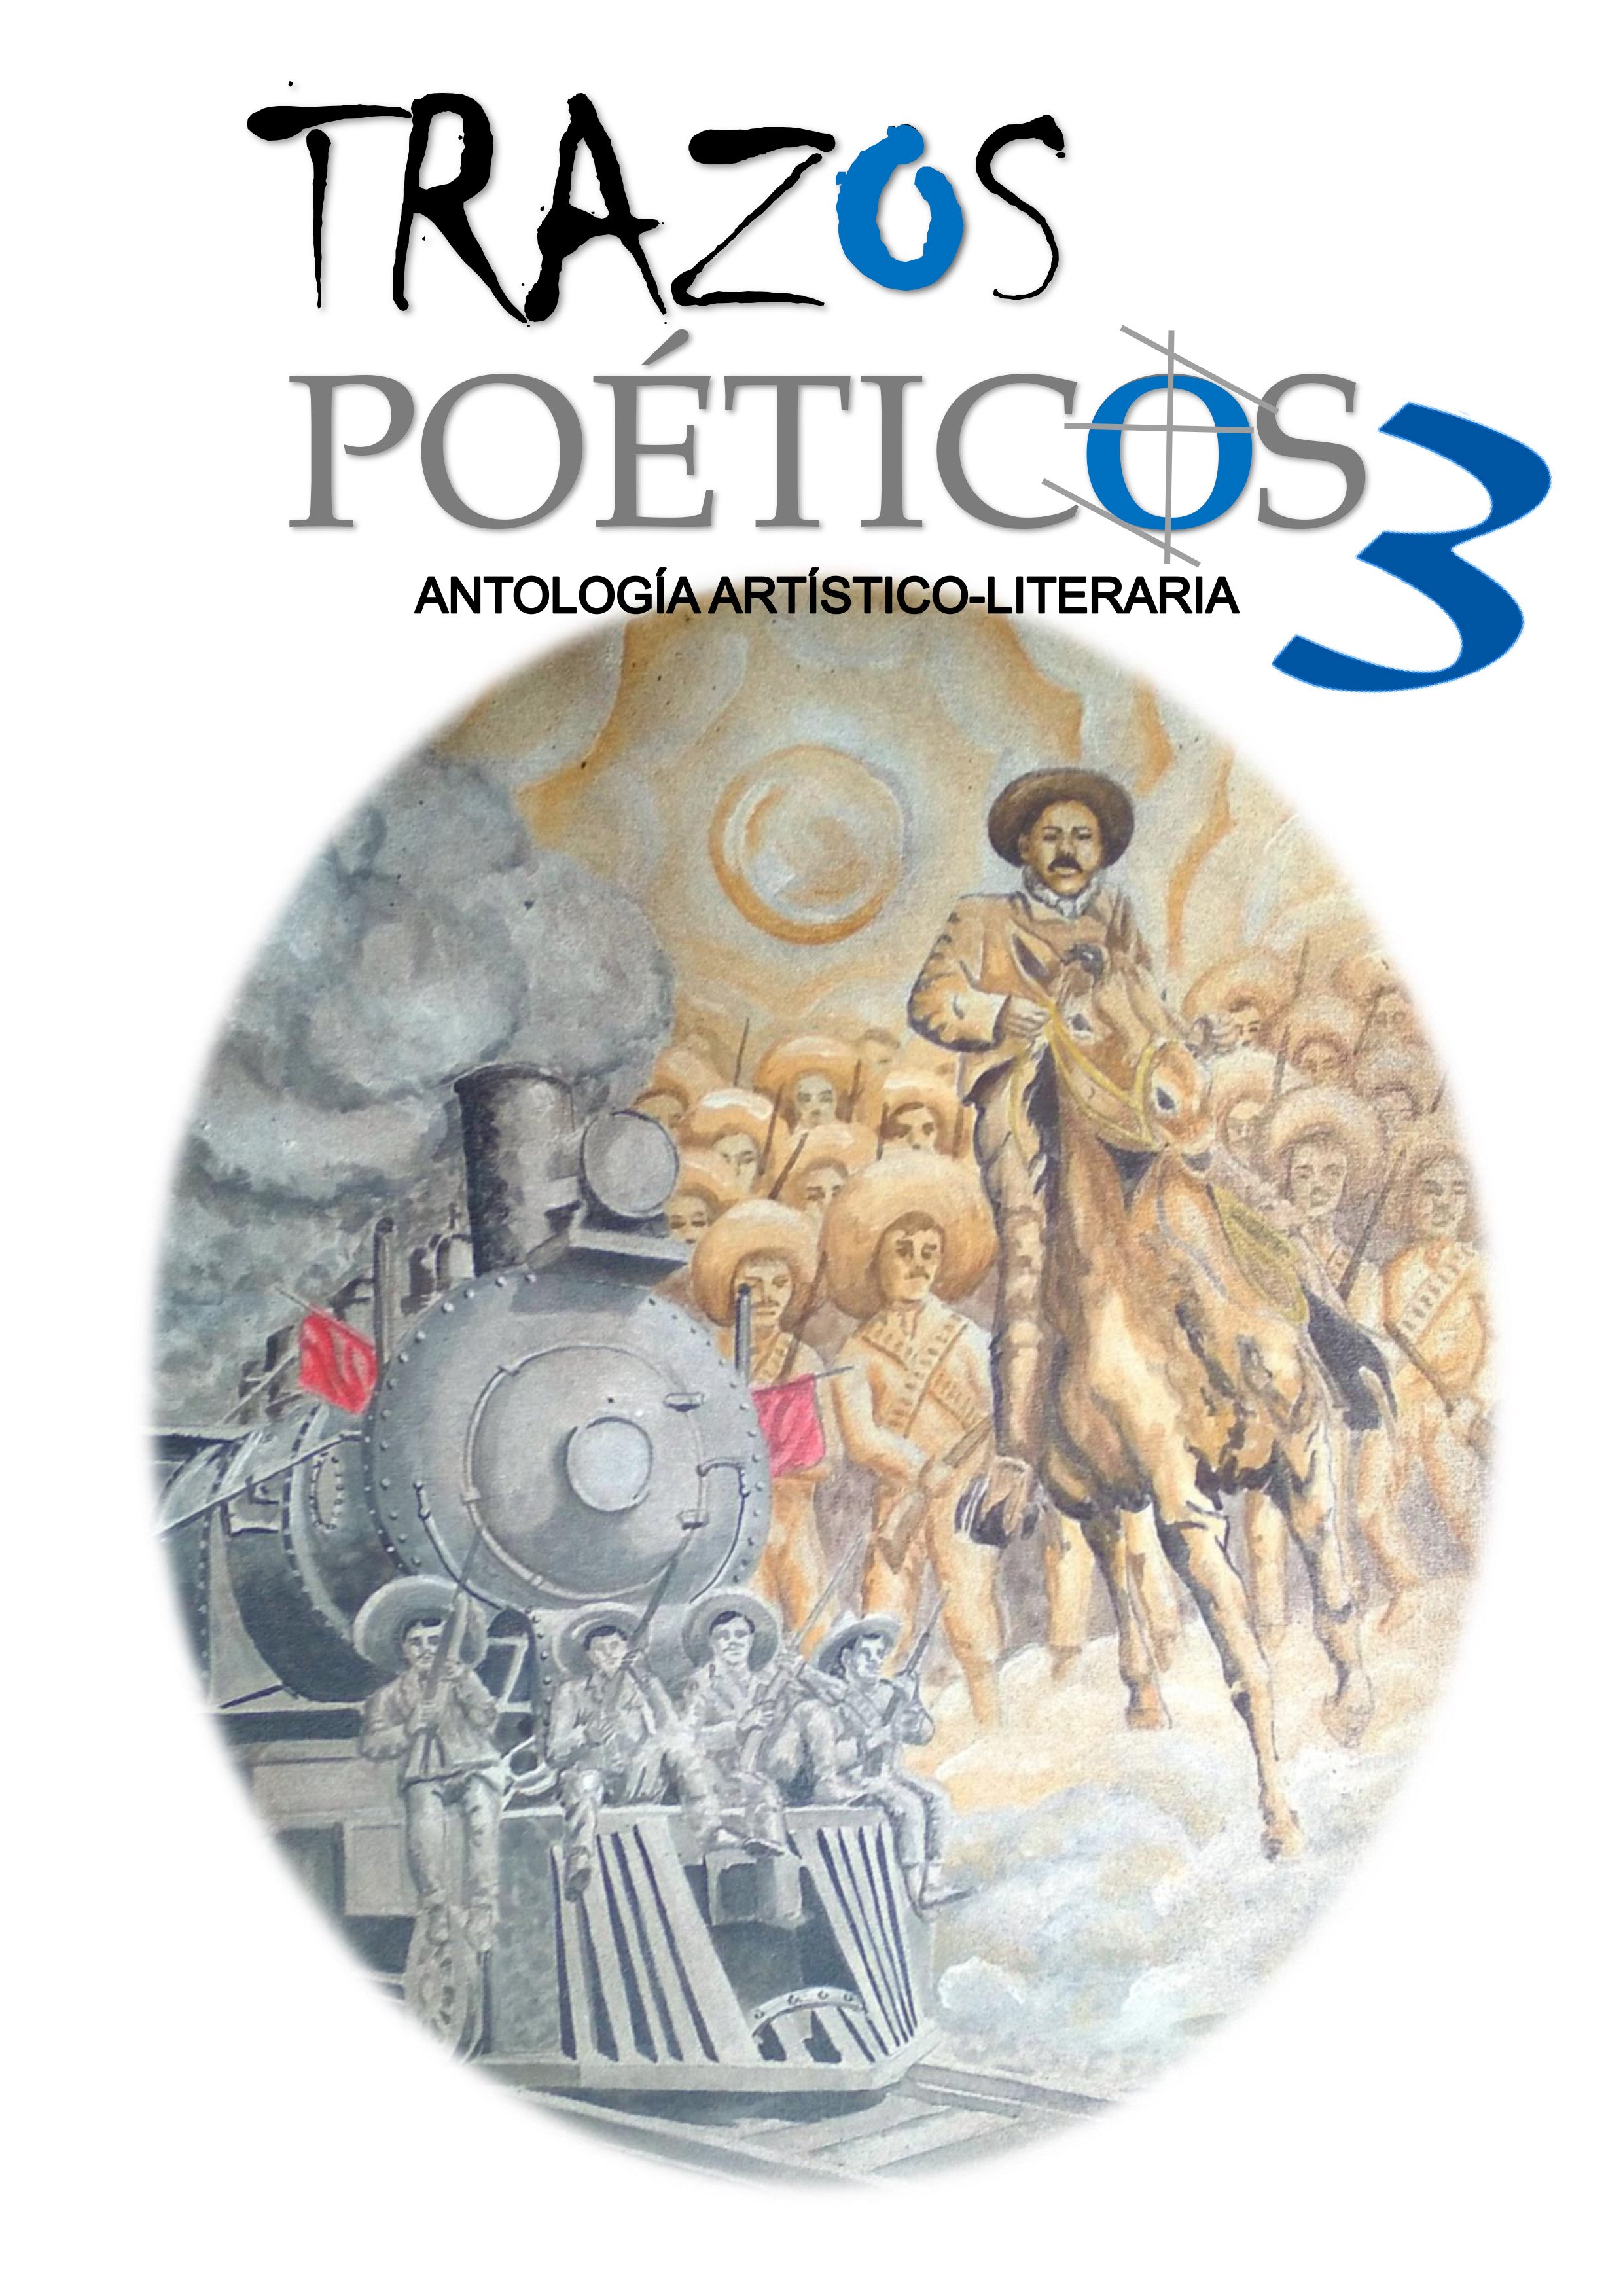 Catálogo Digital: Trazos Poéticos 3. Antología Artístico-Literaria